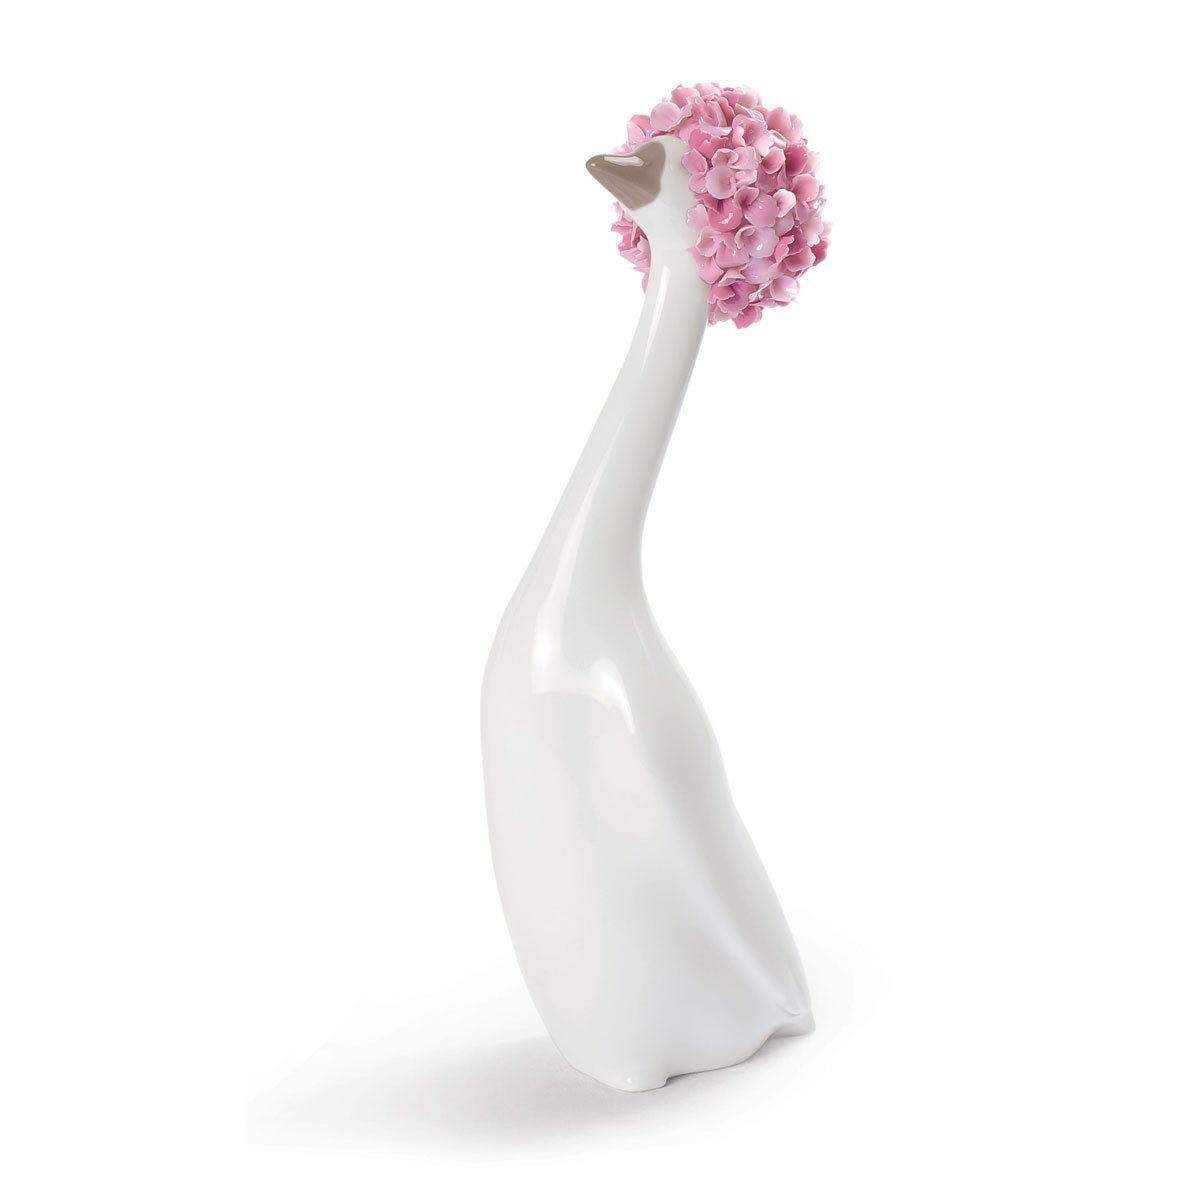 Lladro Design Figures, Goossiping Goose Figurine. Pink